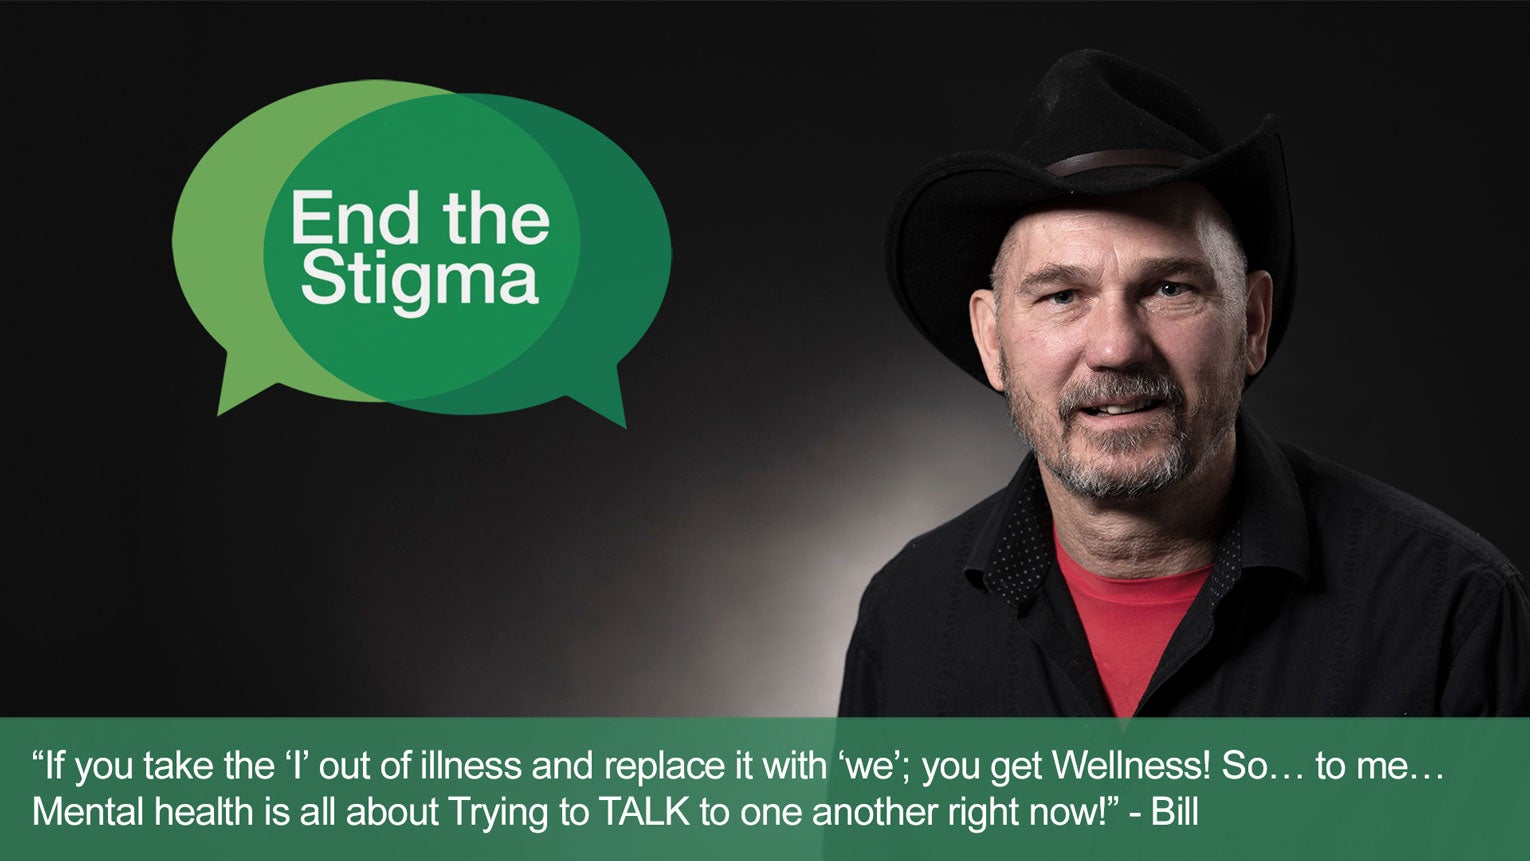 End the Stigma - Bill